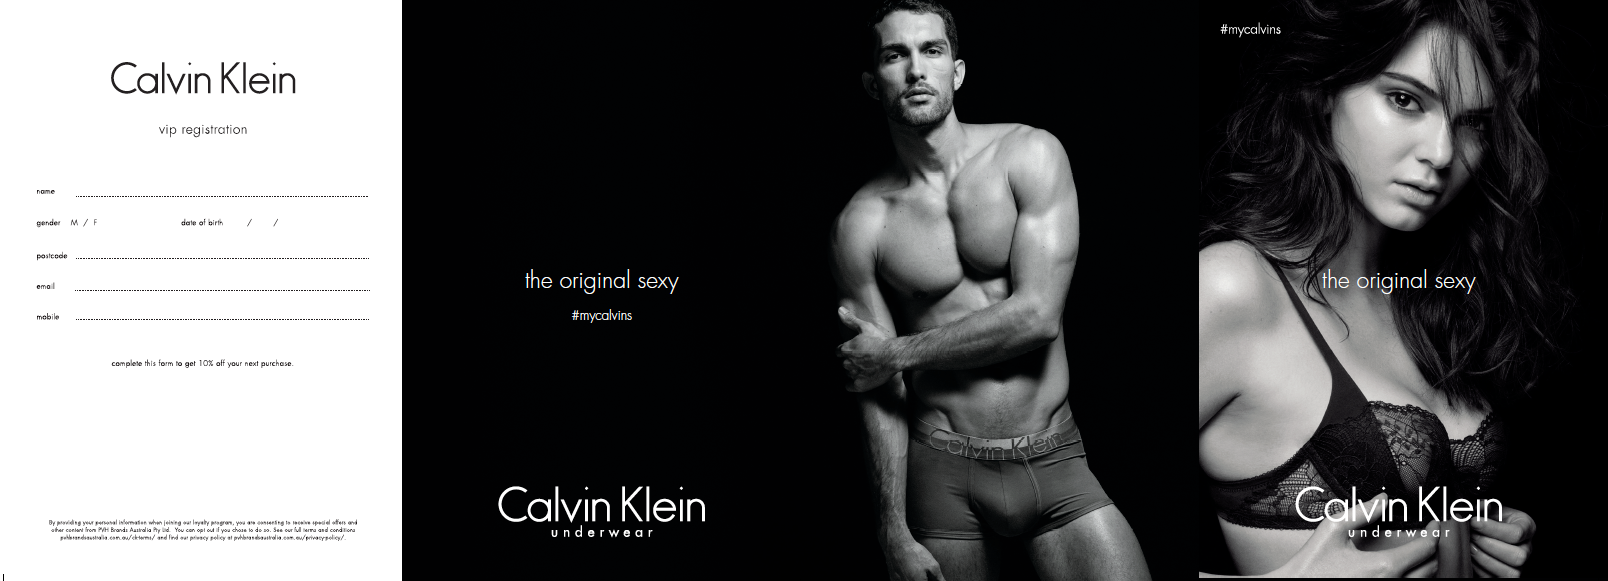 Tiffany Law Design - Calvin Klein Underwear